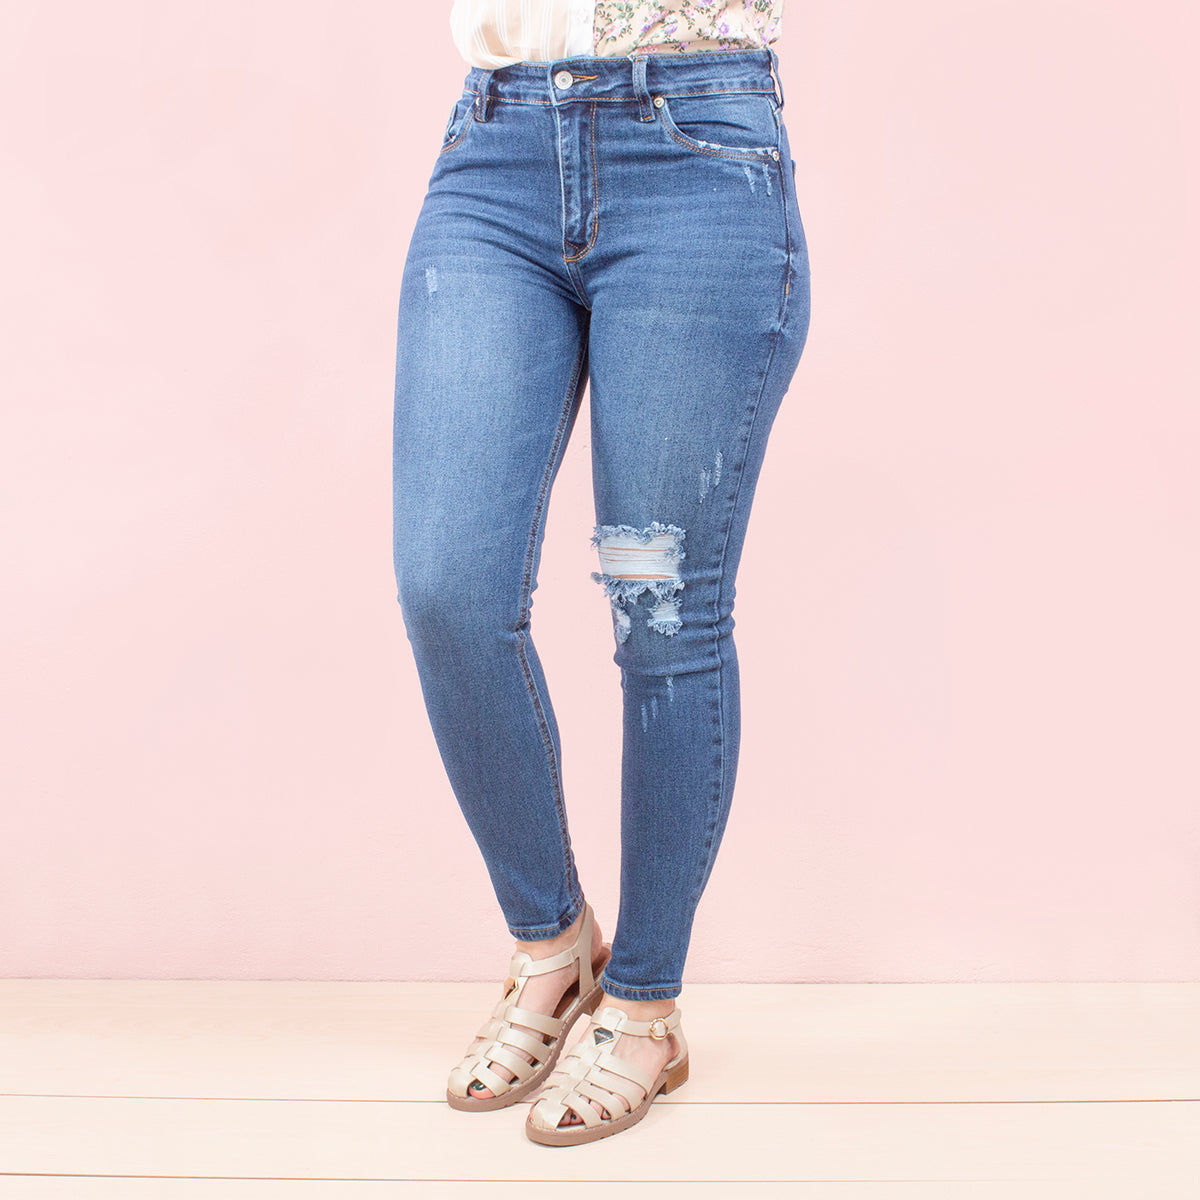 Jeans tipo skinny color azul diseño desgastado